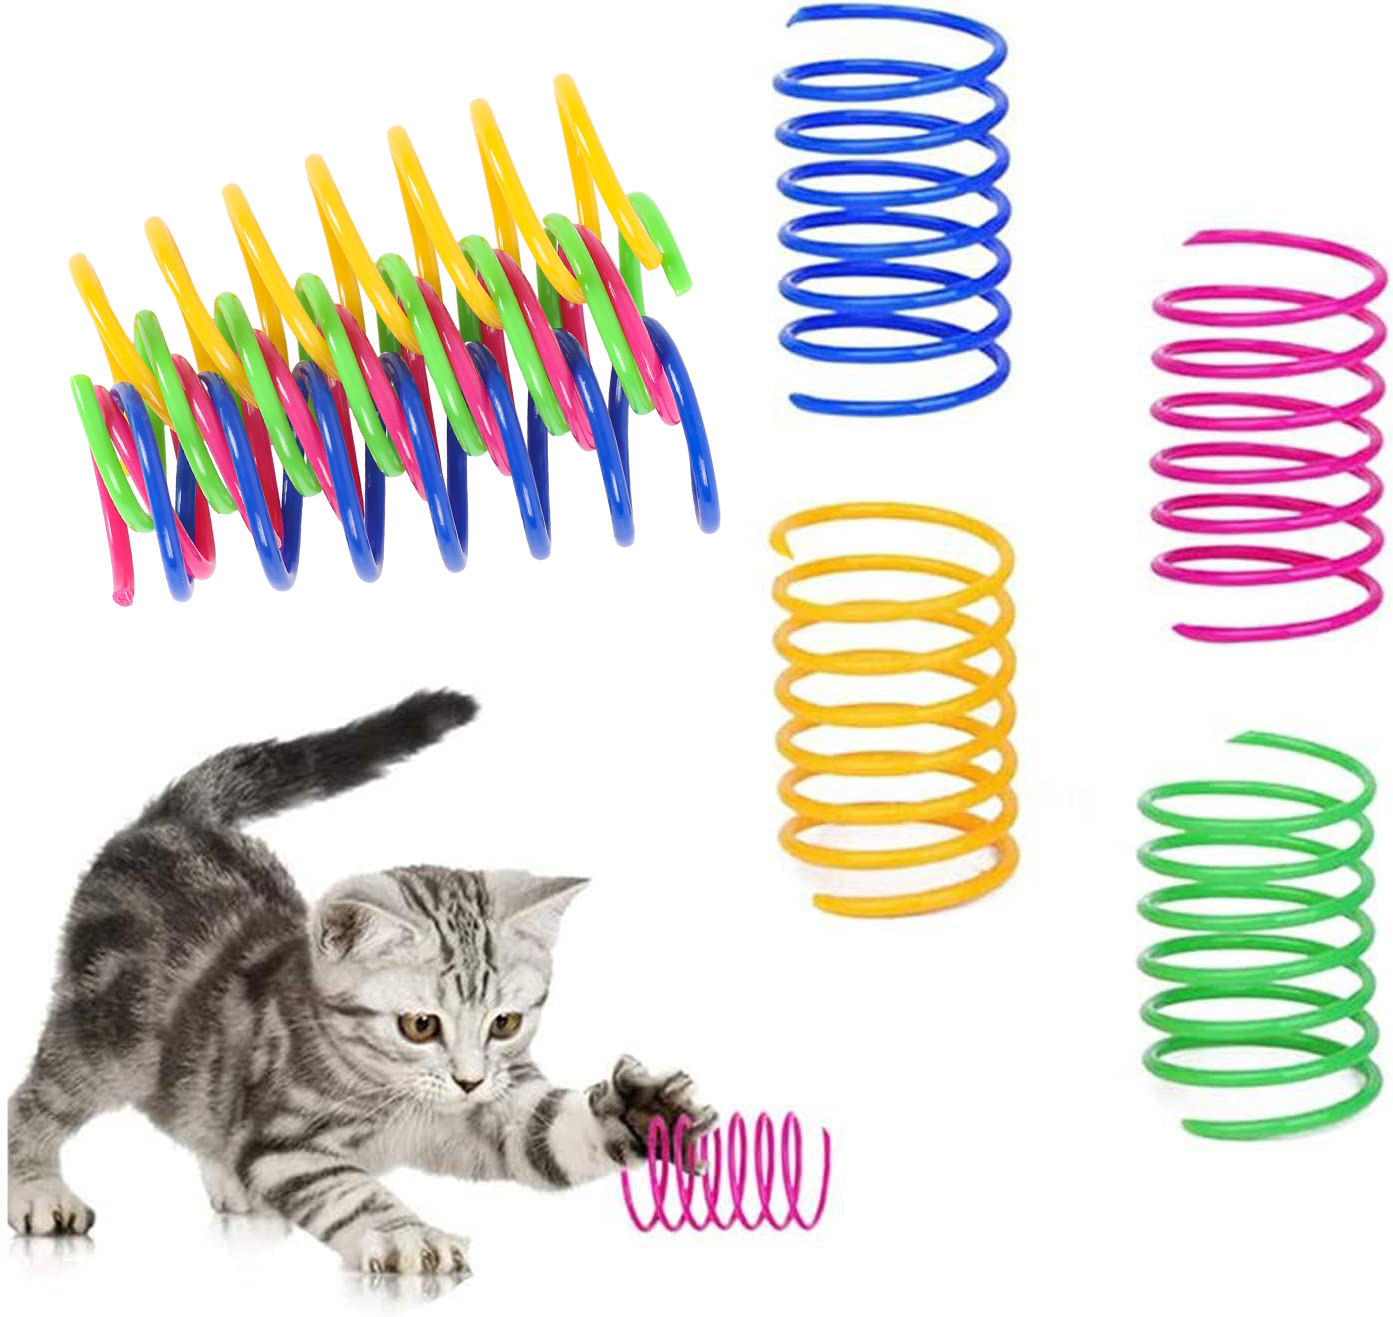 4'lü Paket Dayanıklı Plastik Kedi Spiral Yaylı İnteraktif Kedi Oyuncağı